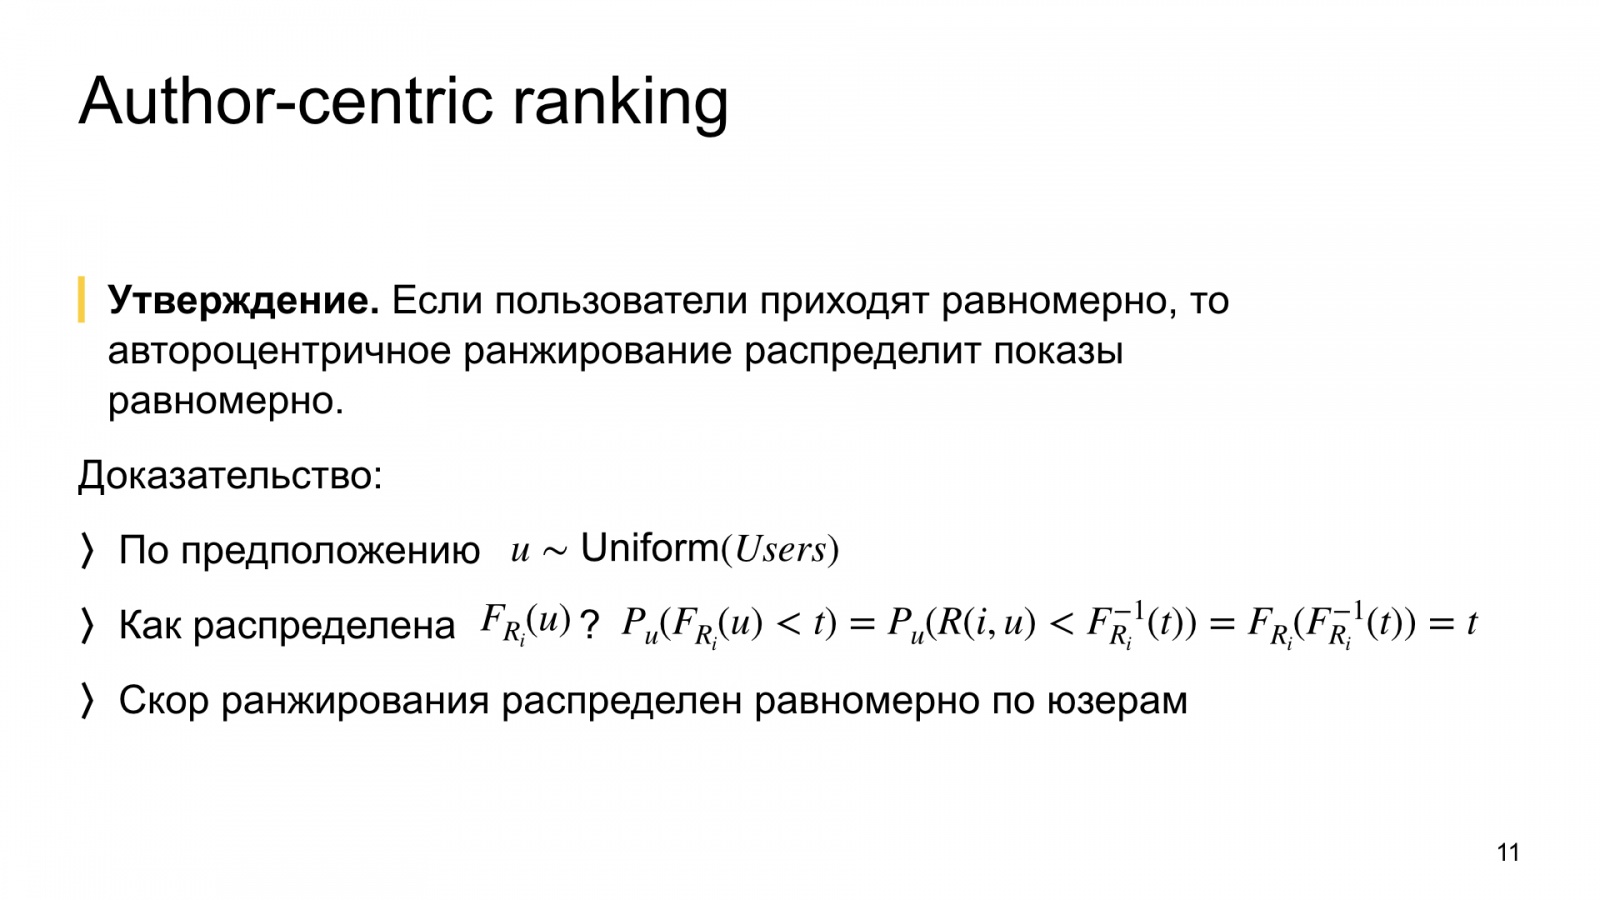 Автороцентричное ранжирование. Доклад Яндекса о поиске релевантной аудитории для авторов Дзена - 11